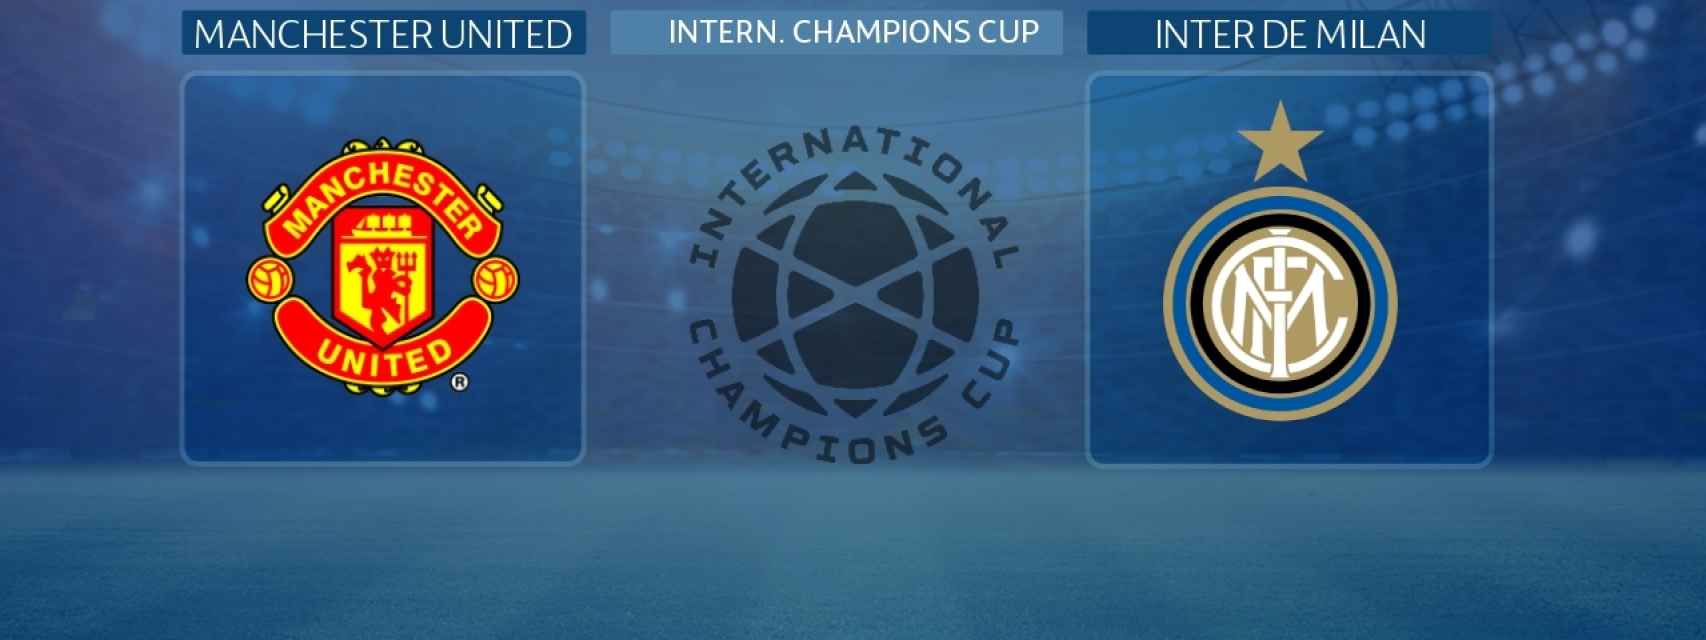 Manchester United - Inter de Milán: siga en directo el partido de la International Champions Cup